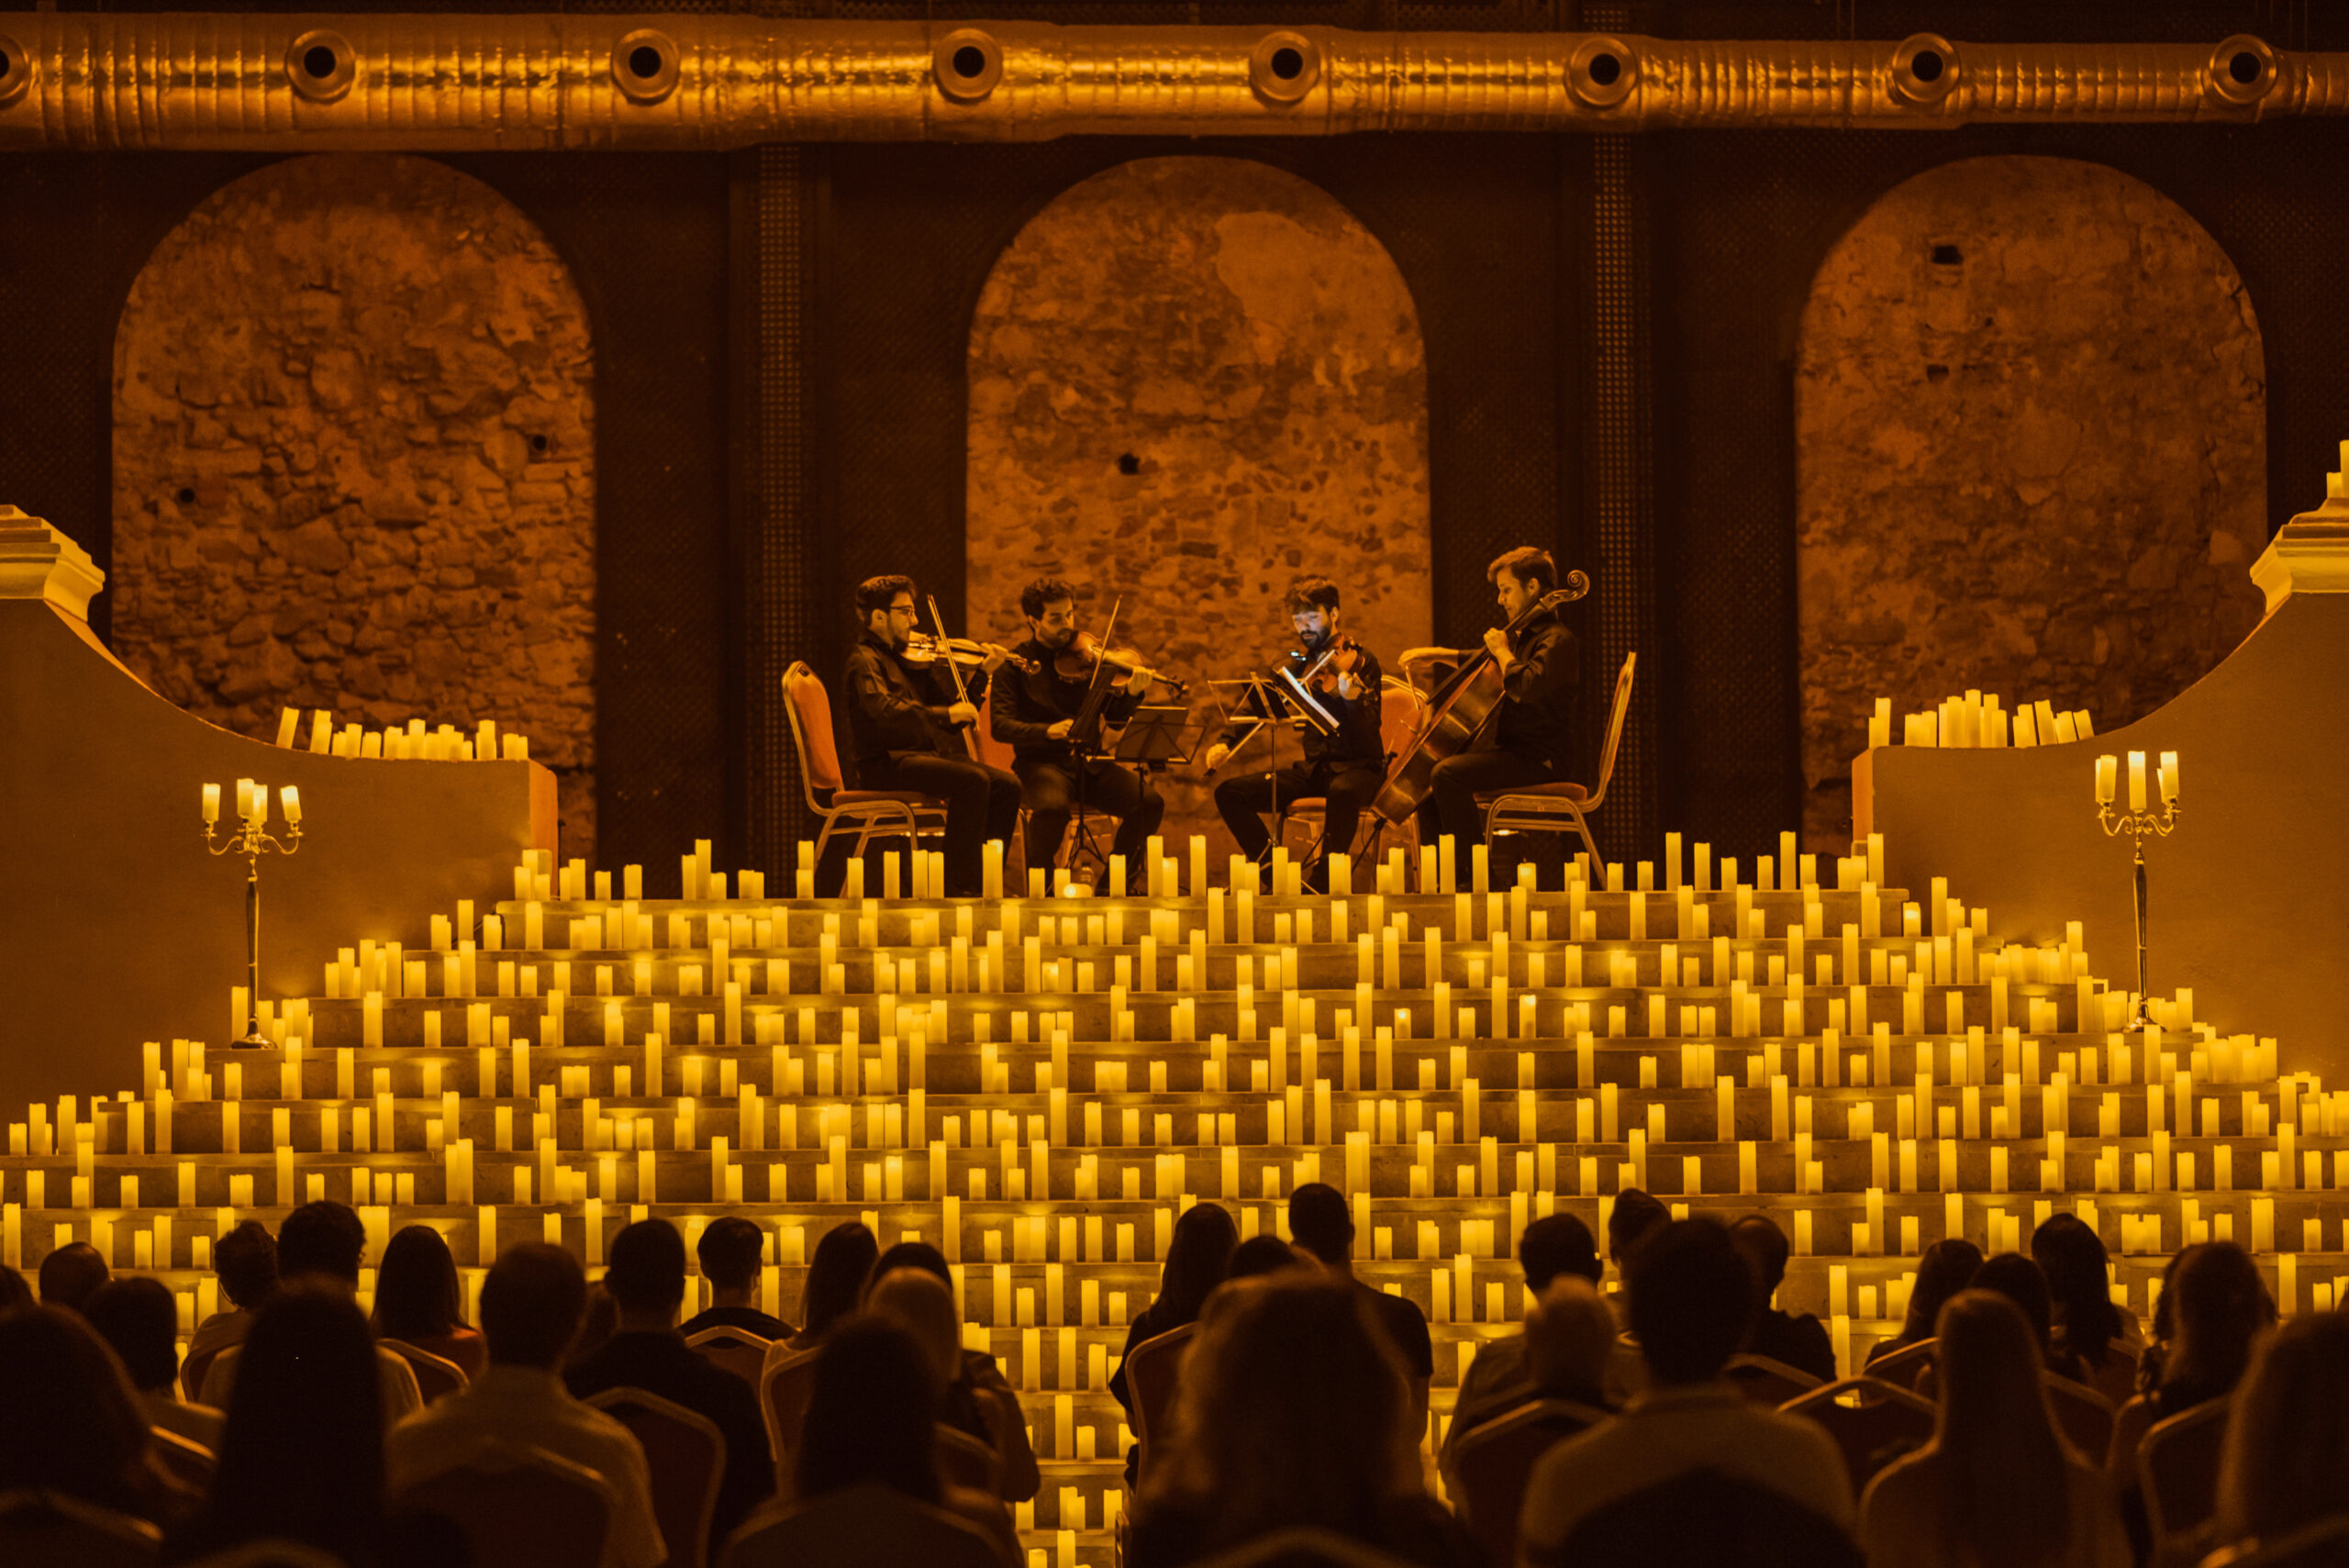 Imagen de cortesía para ilustrar la experiencia de los conciertos Candlelight de Fever.